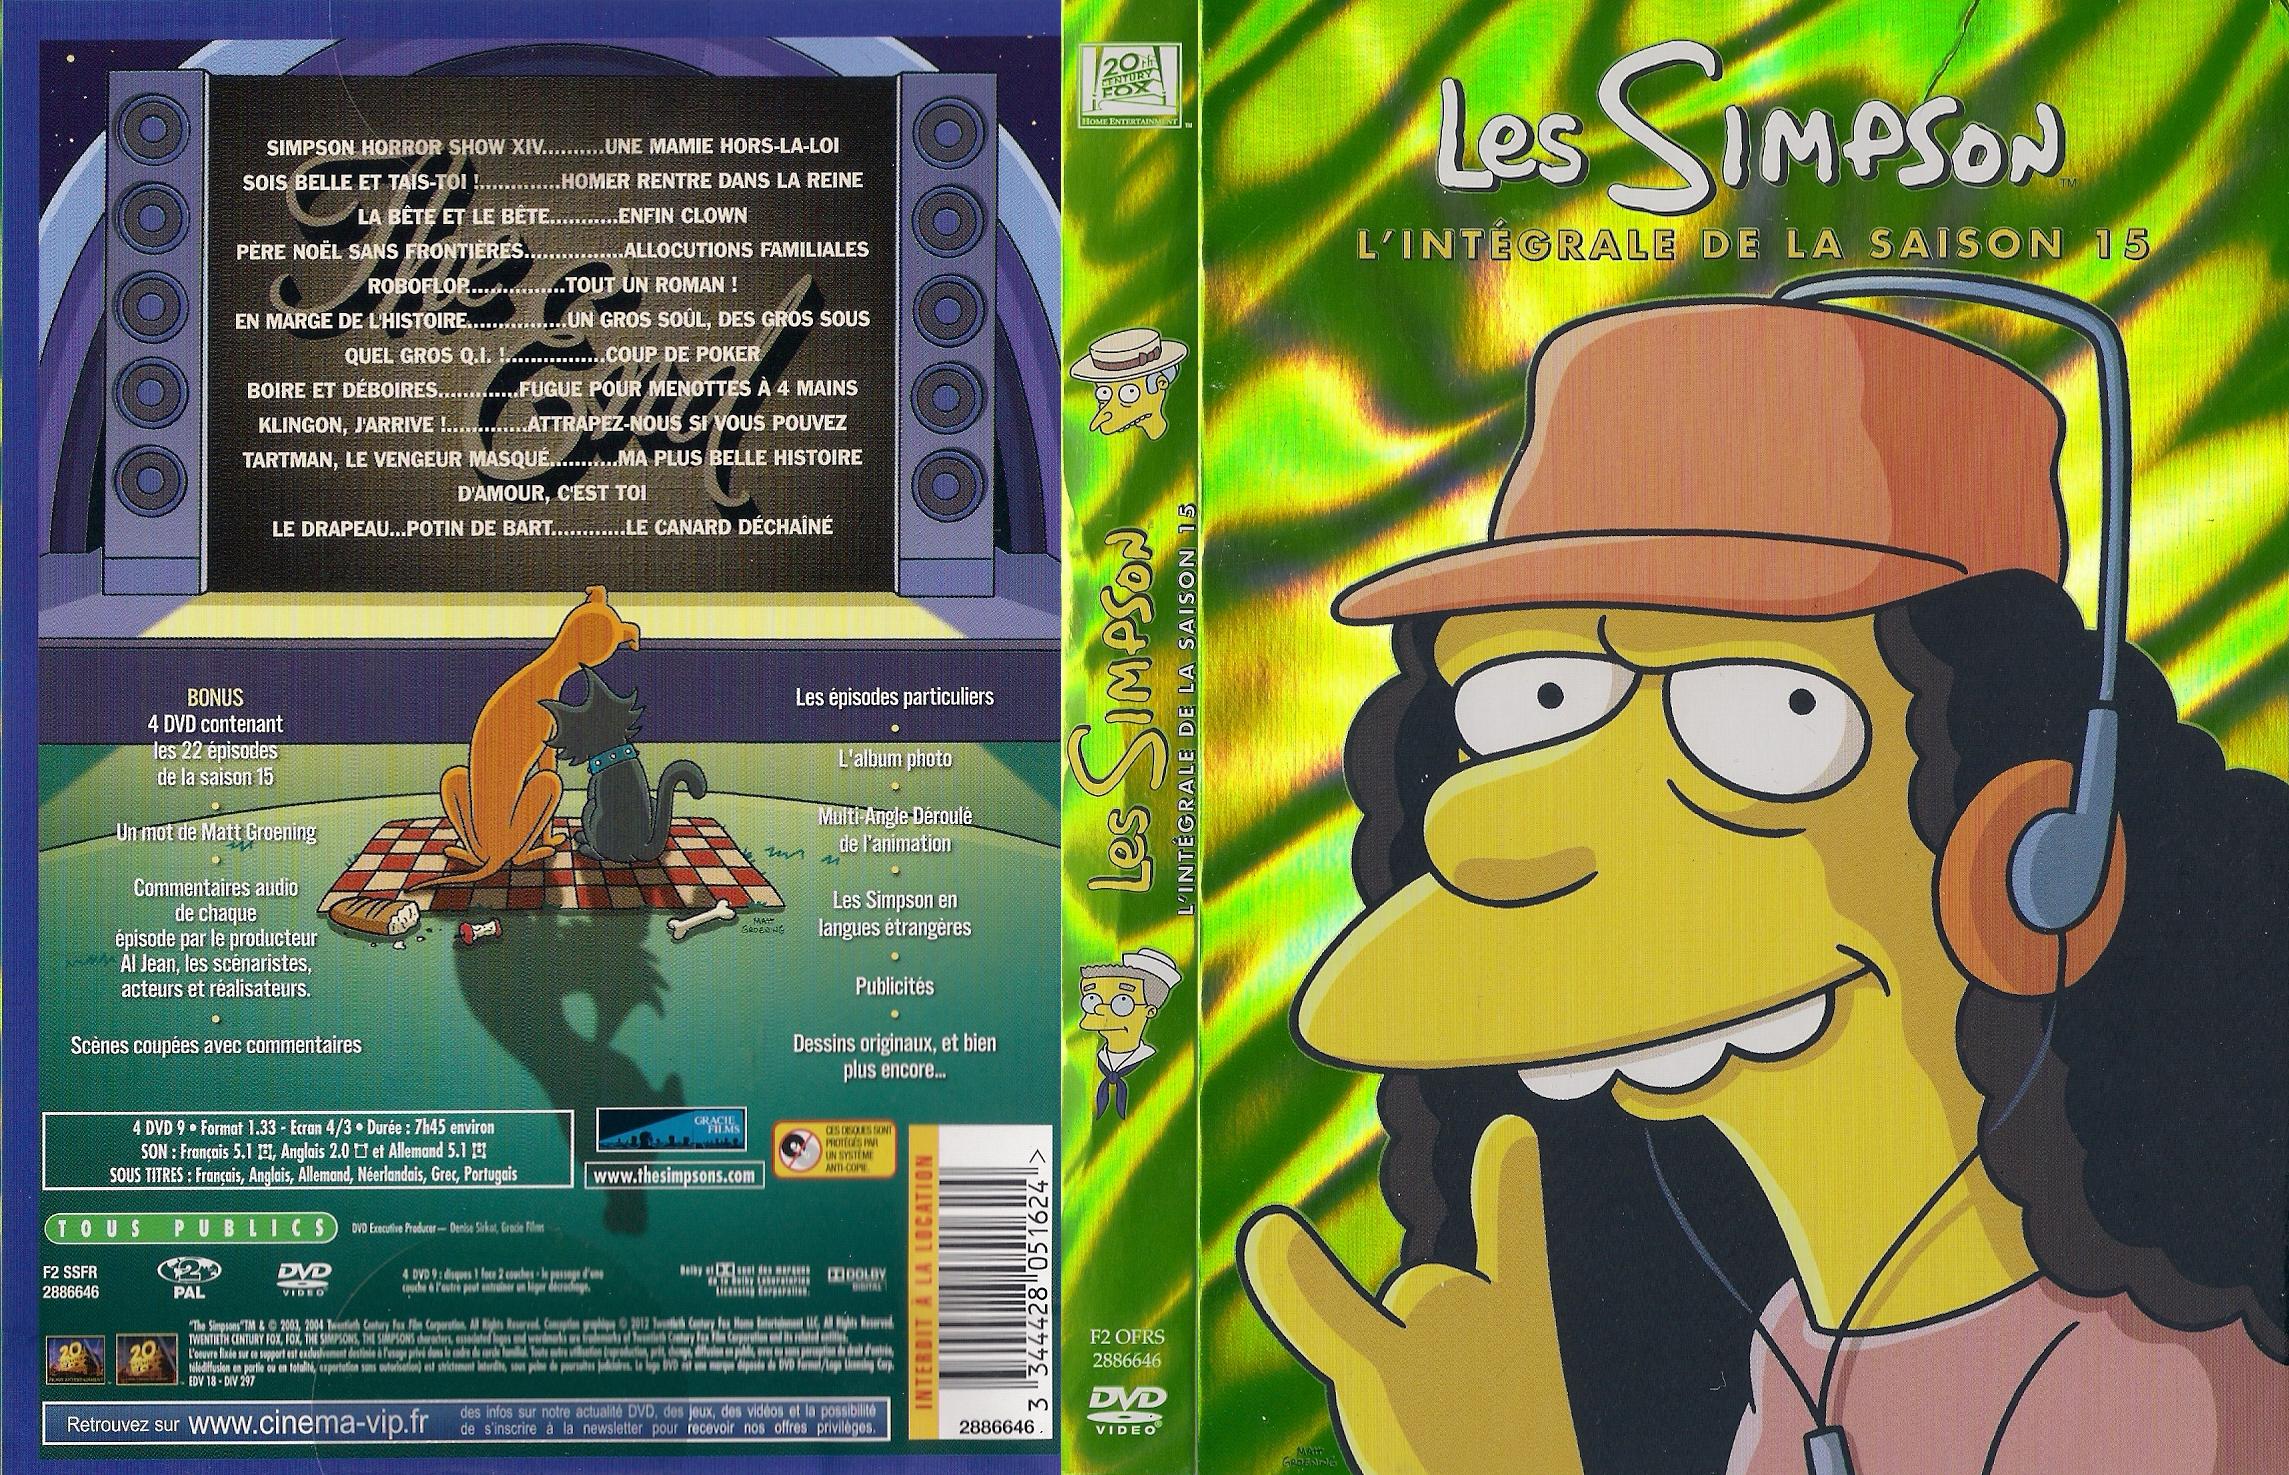 Jaquette DVD Les Simpson Saison 15